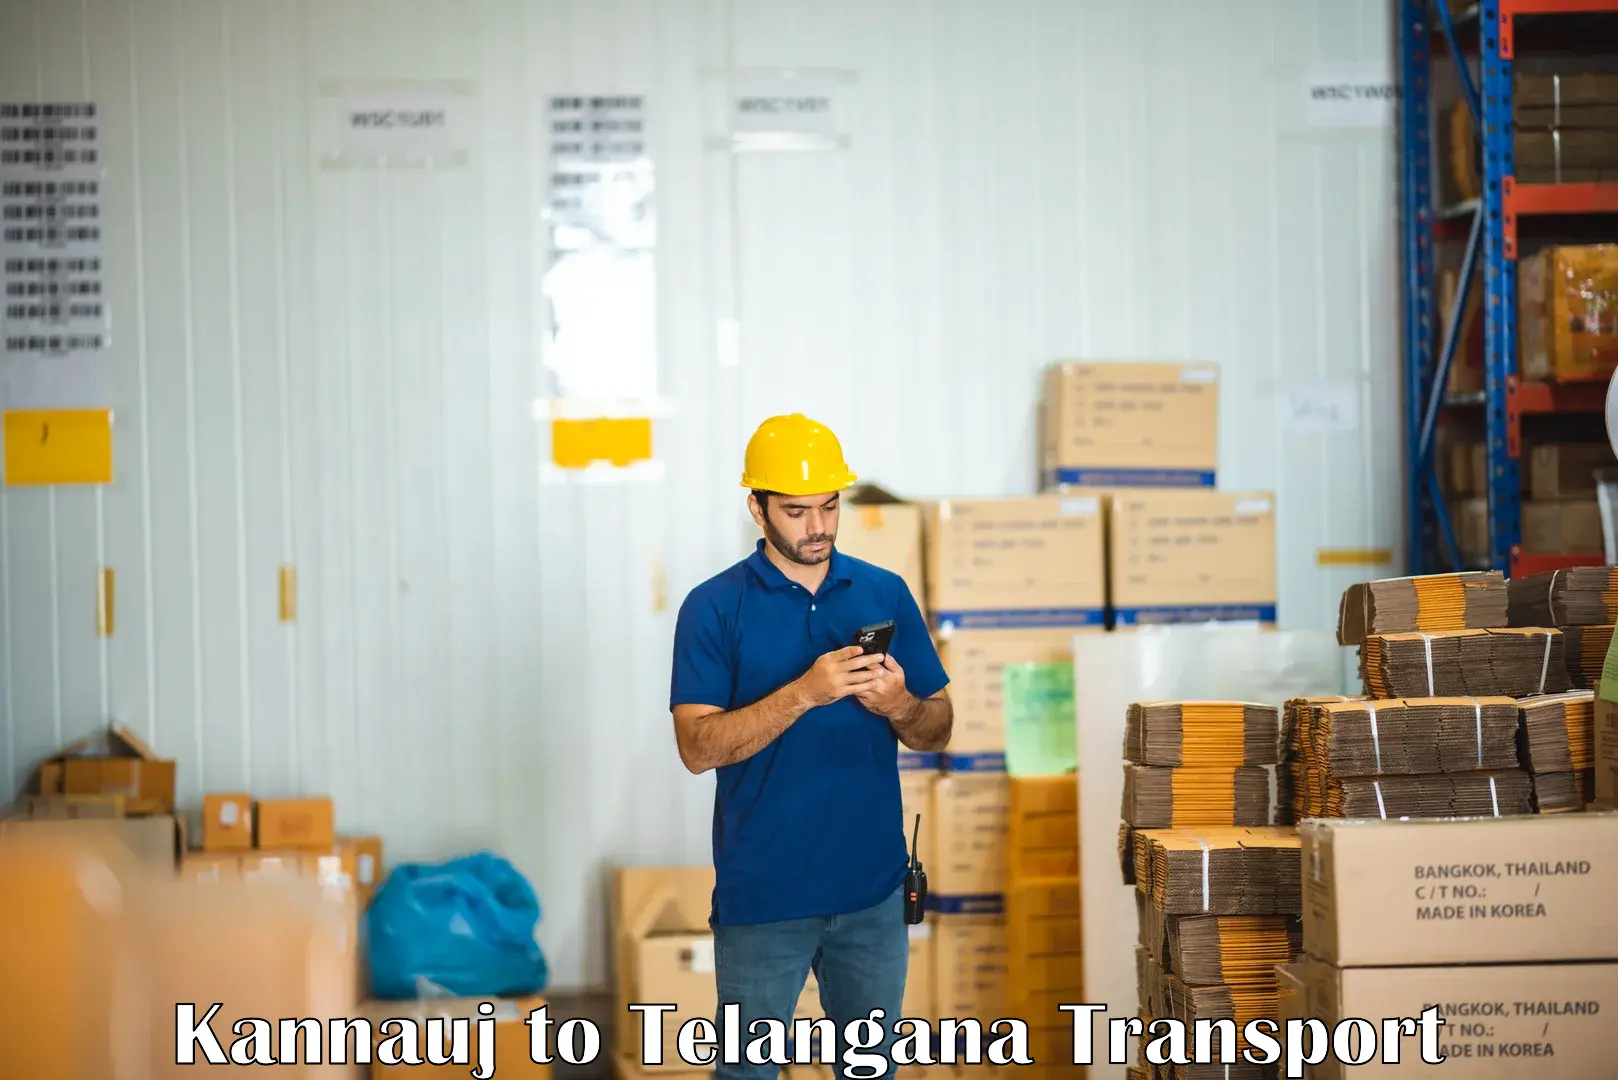 Container transport service Kannauj to Telangana